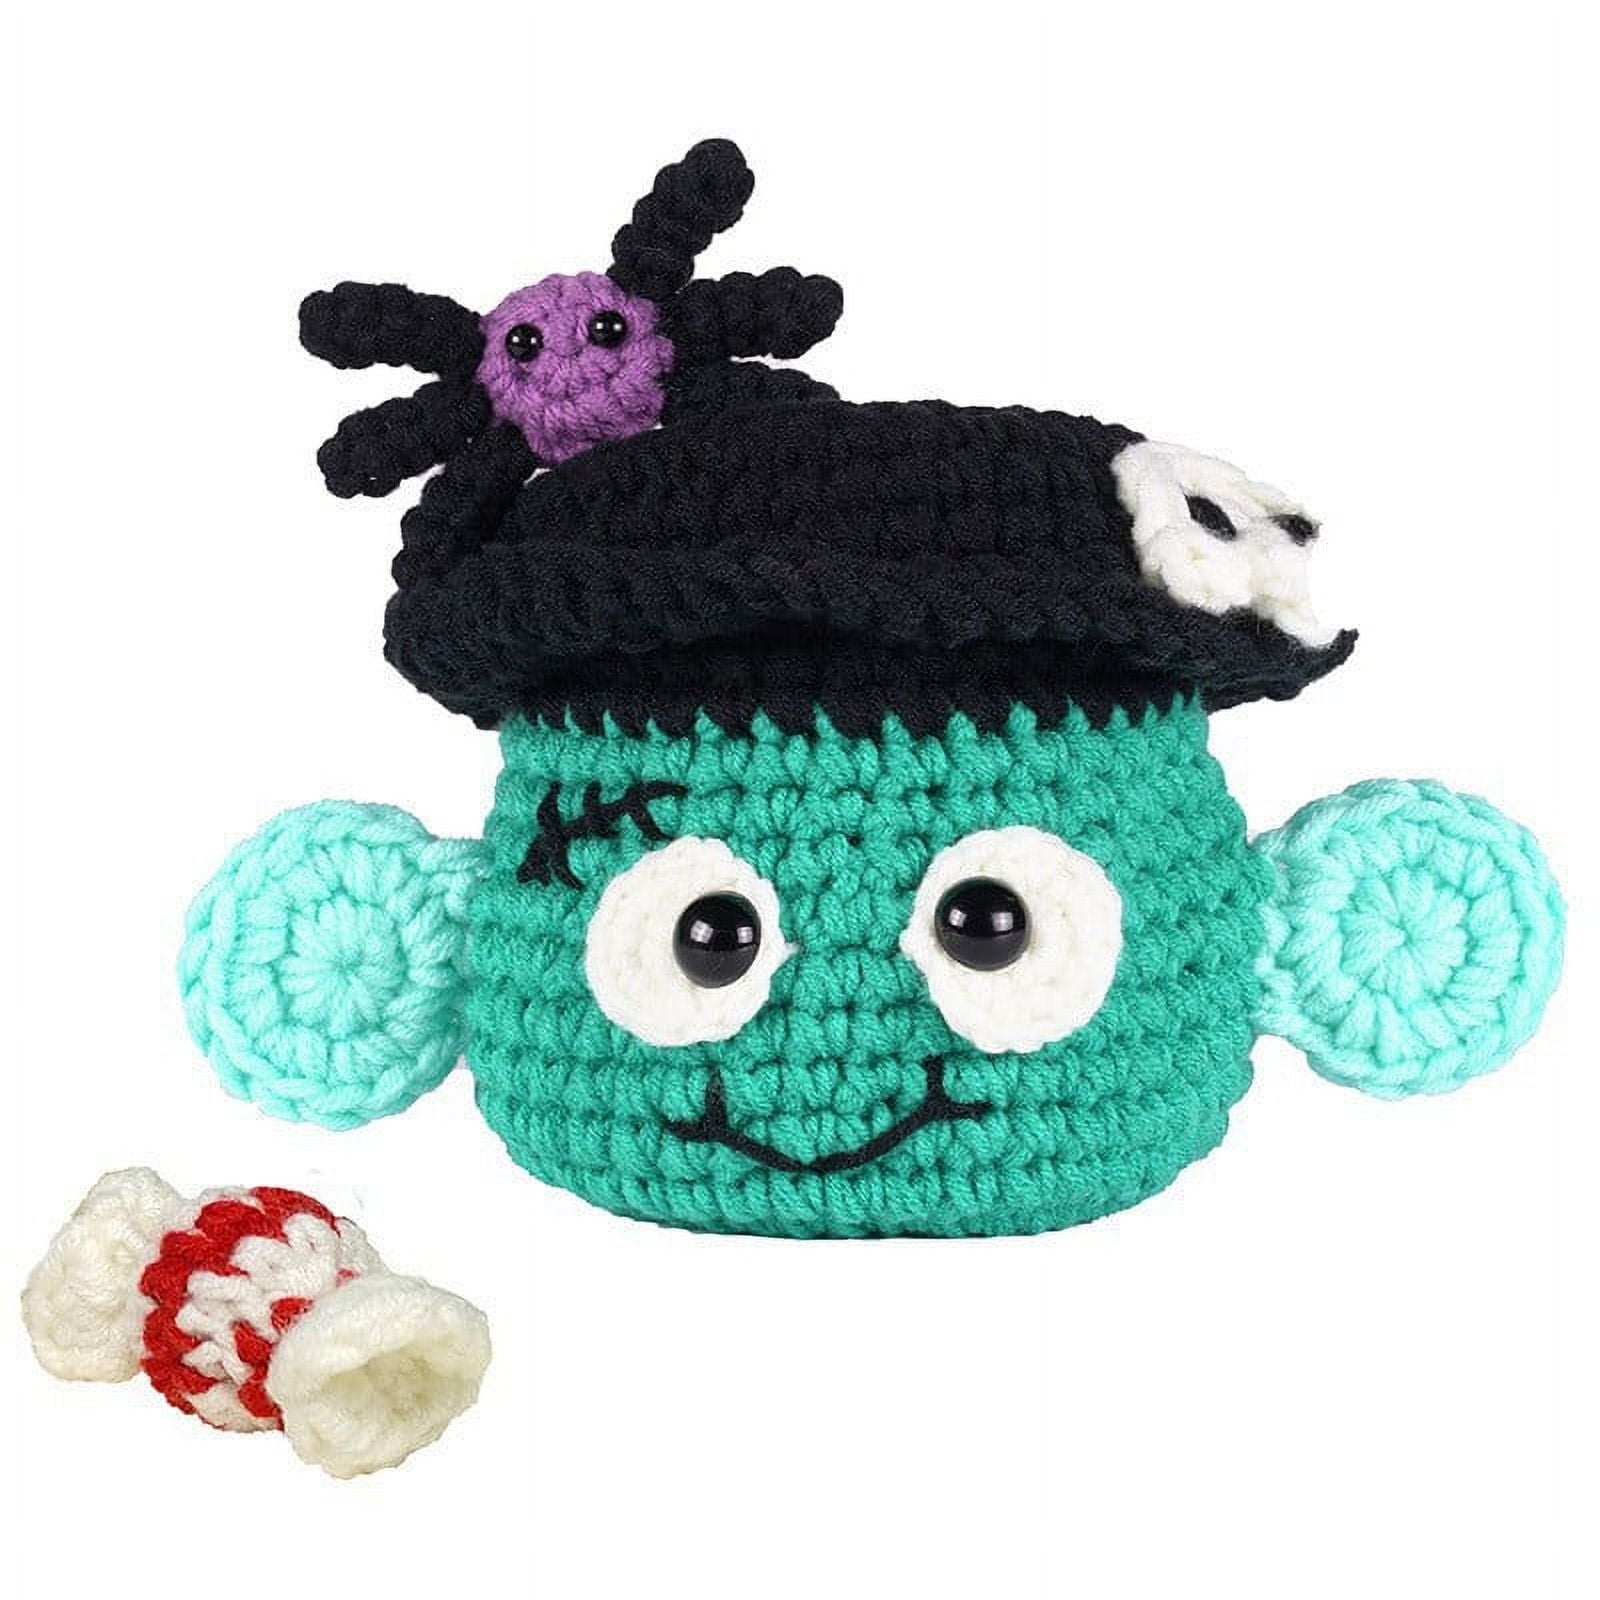 Ergonomic Crochet Hook, Witch Crochet Hook, Halloween Crochet, Horror,  Zombie Finger, Custom Crochet Hook, Nerdy Crochet, Creepy Crochet 